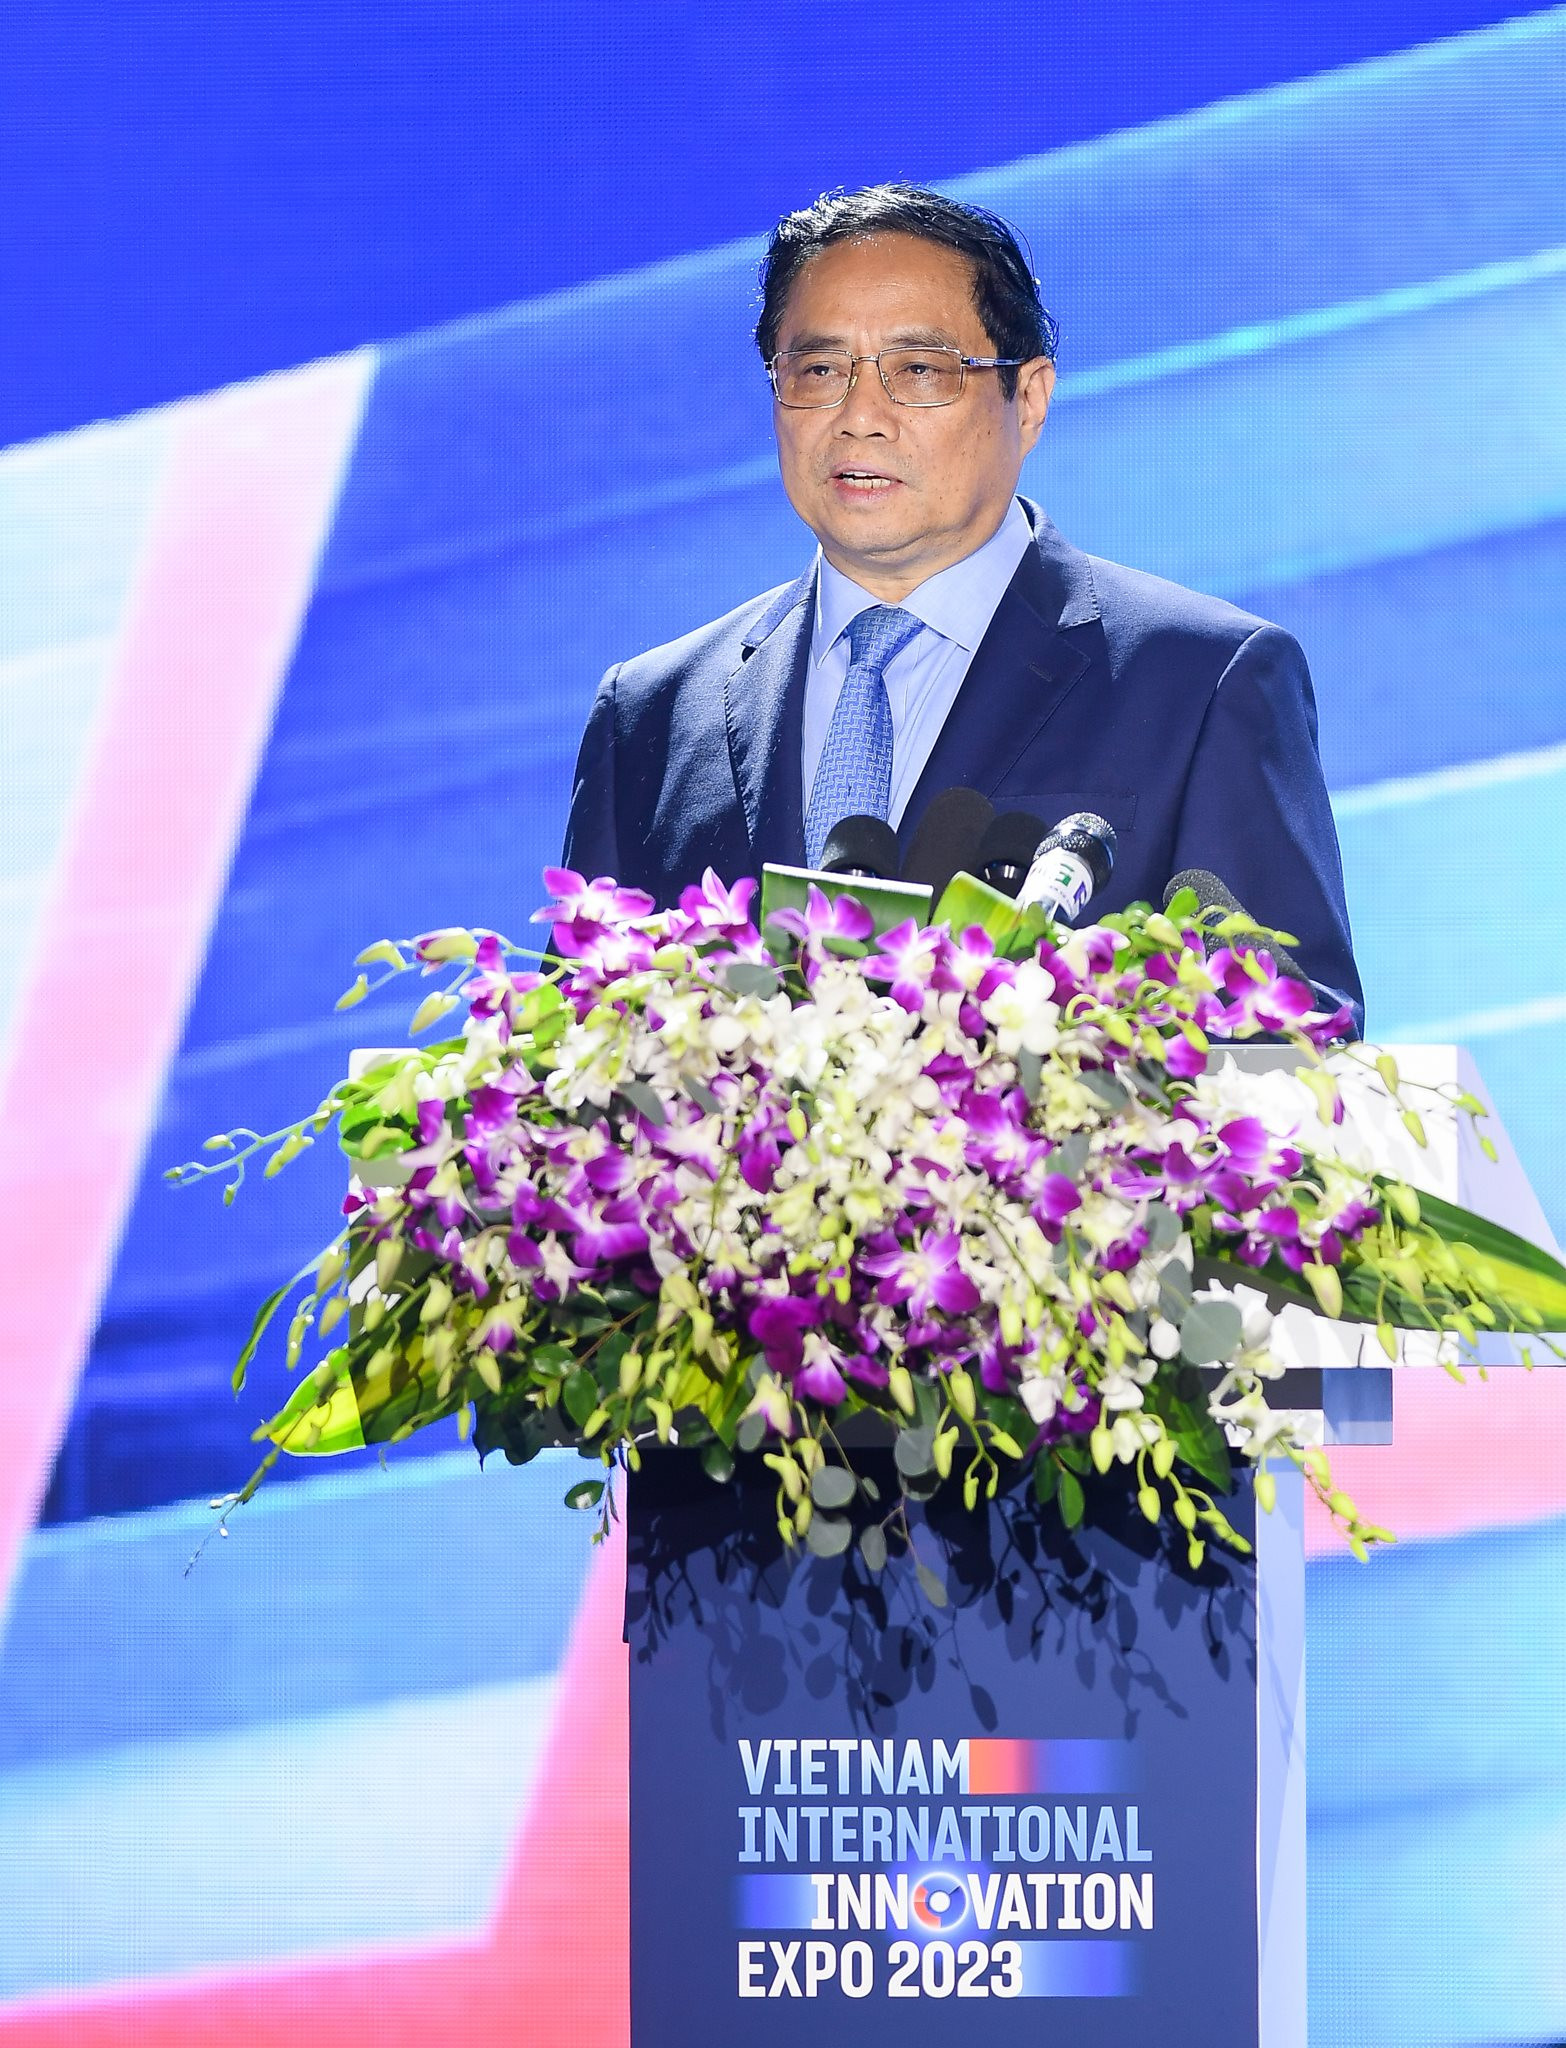 Thủ tướng Phạm Minh Chính: Đổi mới Sáng tạo là xu thế tất yếu, sự lựa chọn mang tính đột phá chiến lược của đất nước ta
